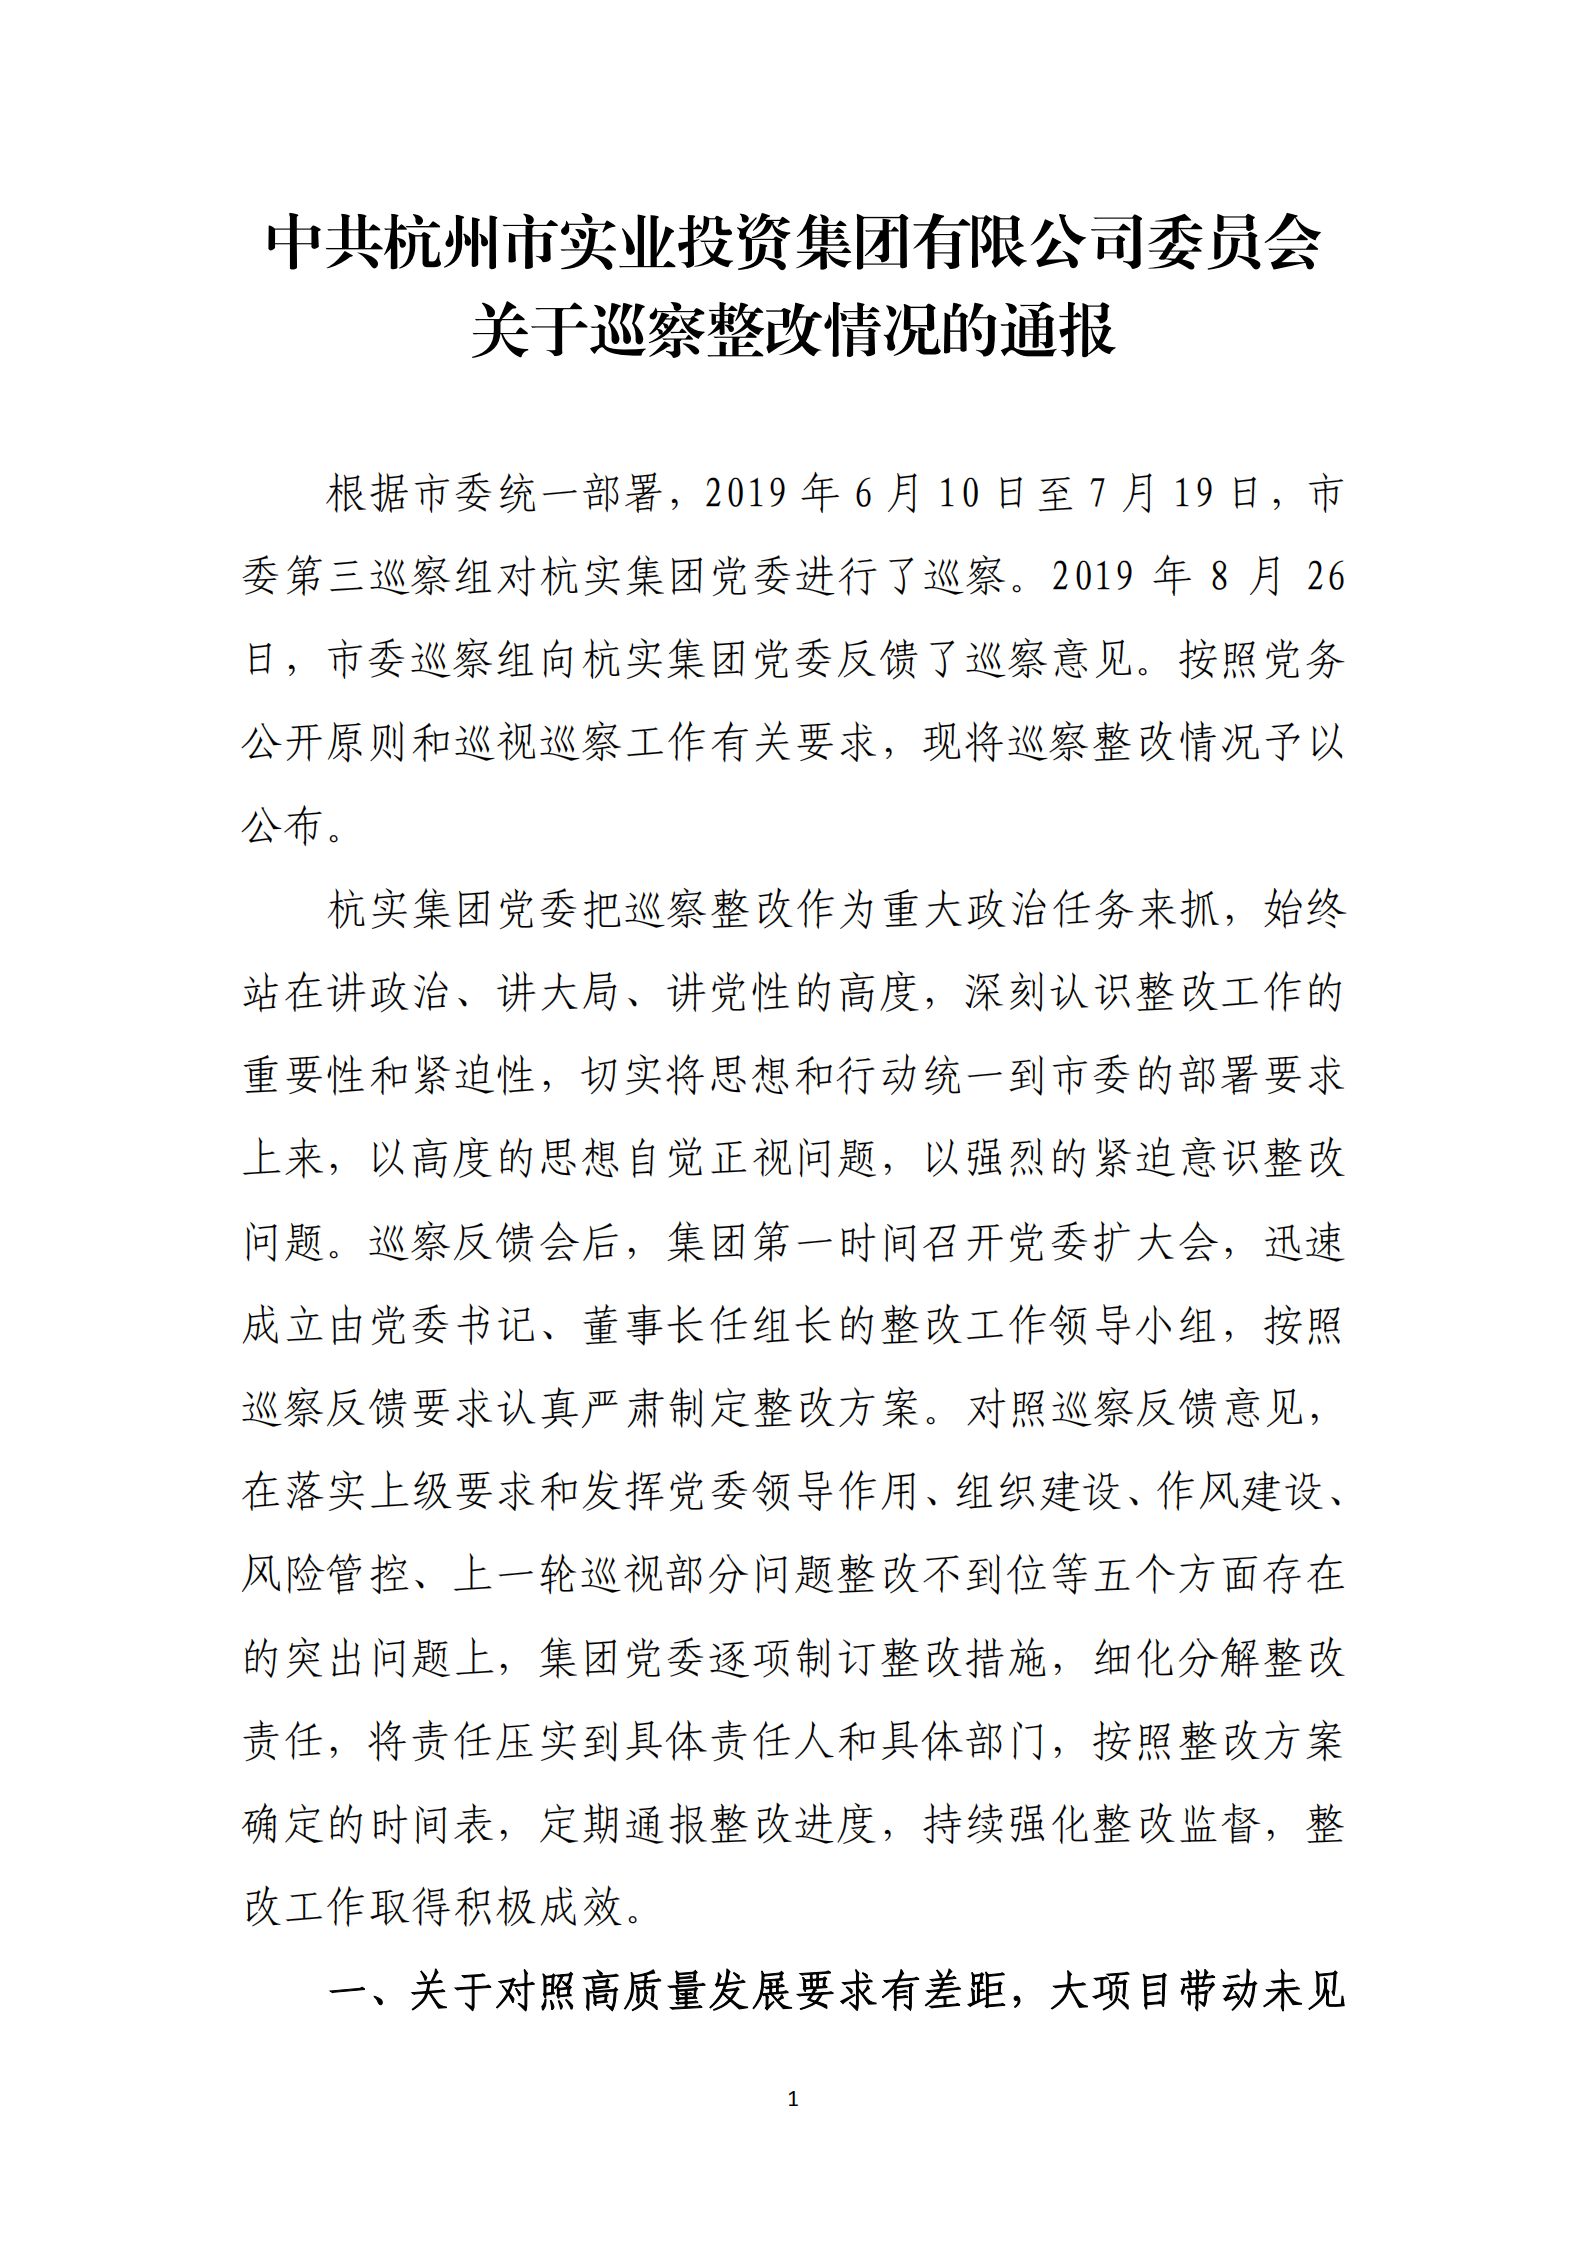 【体育365官方网站】中国有限公司党委关于巡察整改情况的通报_00.png